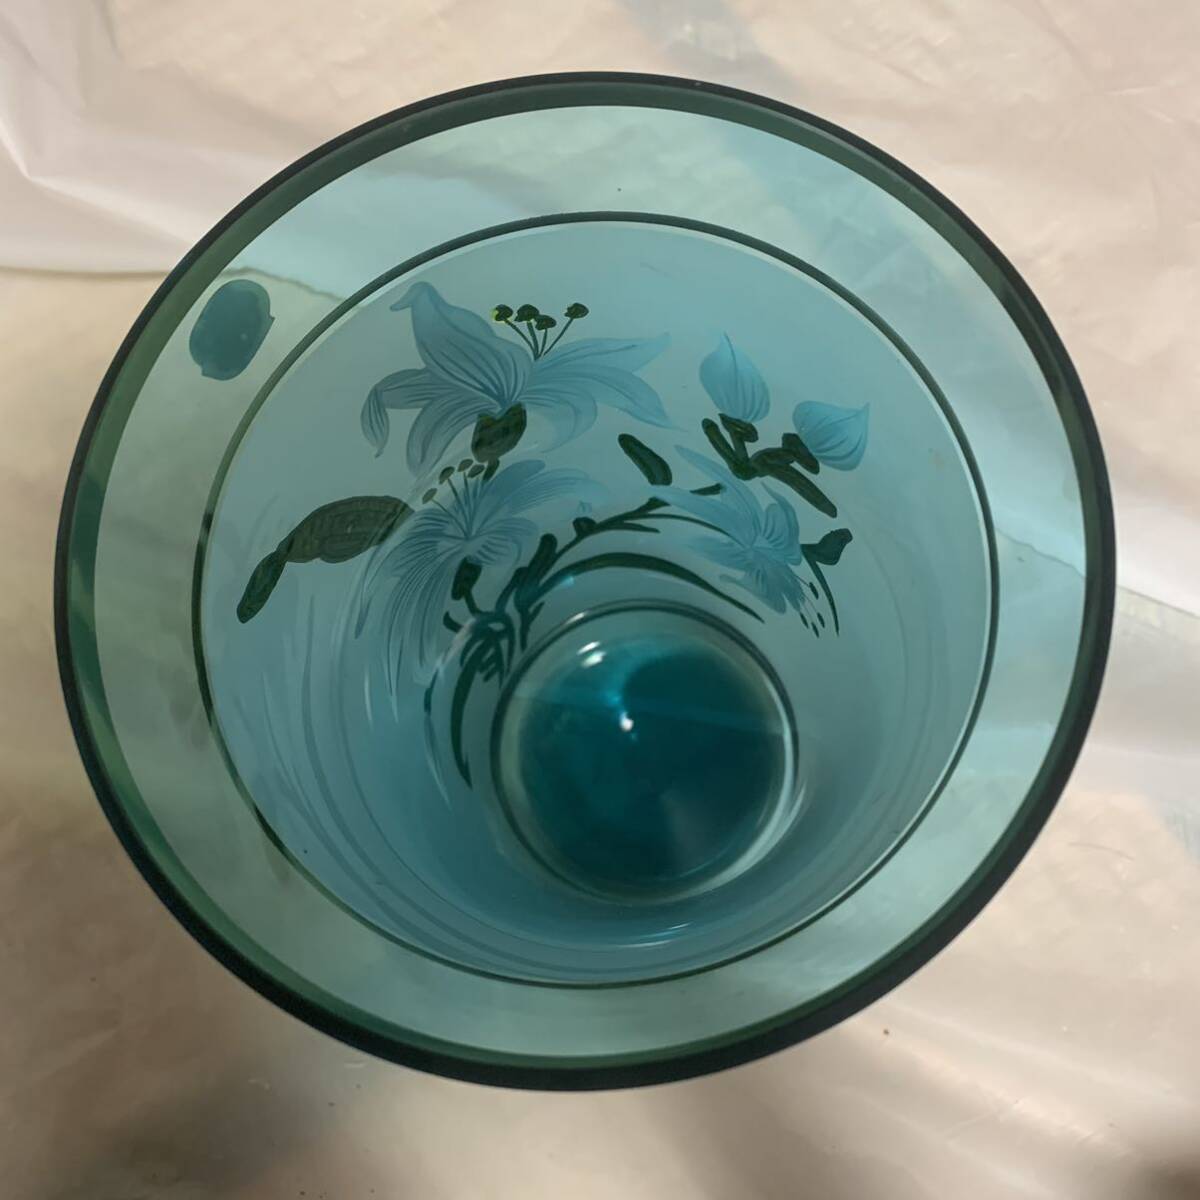 B971 ボヘミア 花瓶 フラワーベース ライトブルー 水色  花入 ガラス 高さ約25.5cm 直径約14.5cm インテリア 飾り物 花器 Bohemiaの画像5